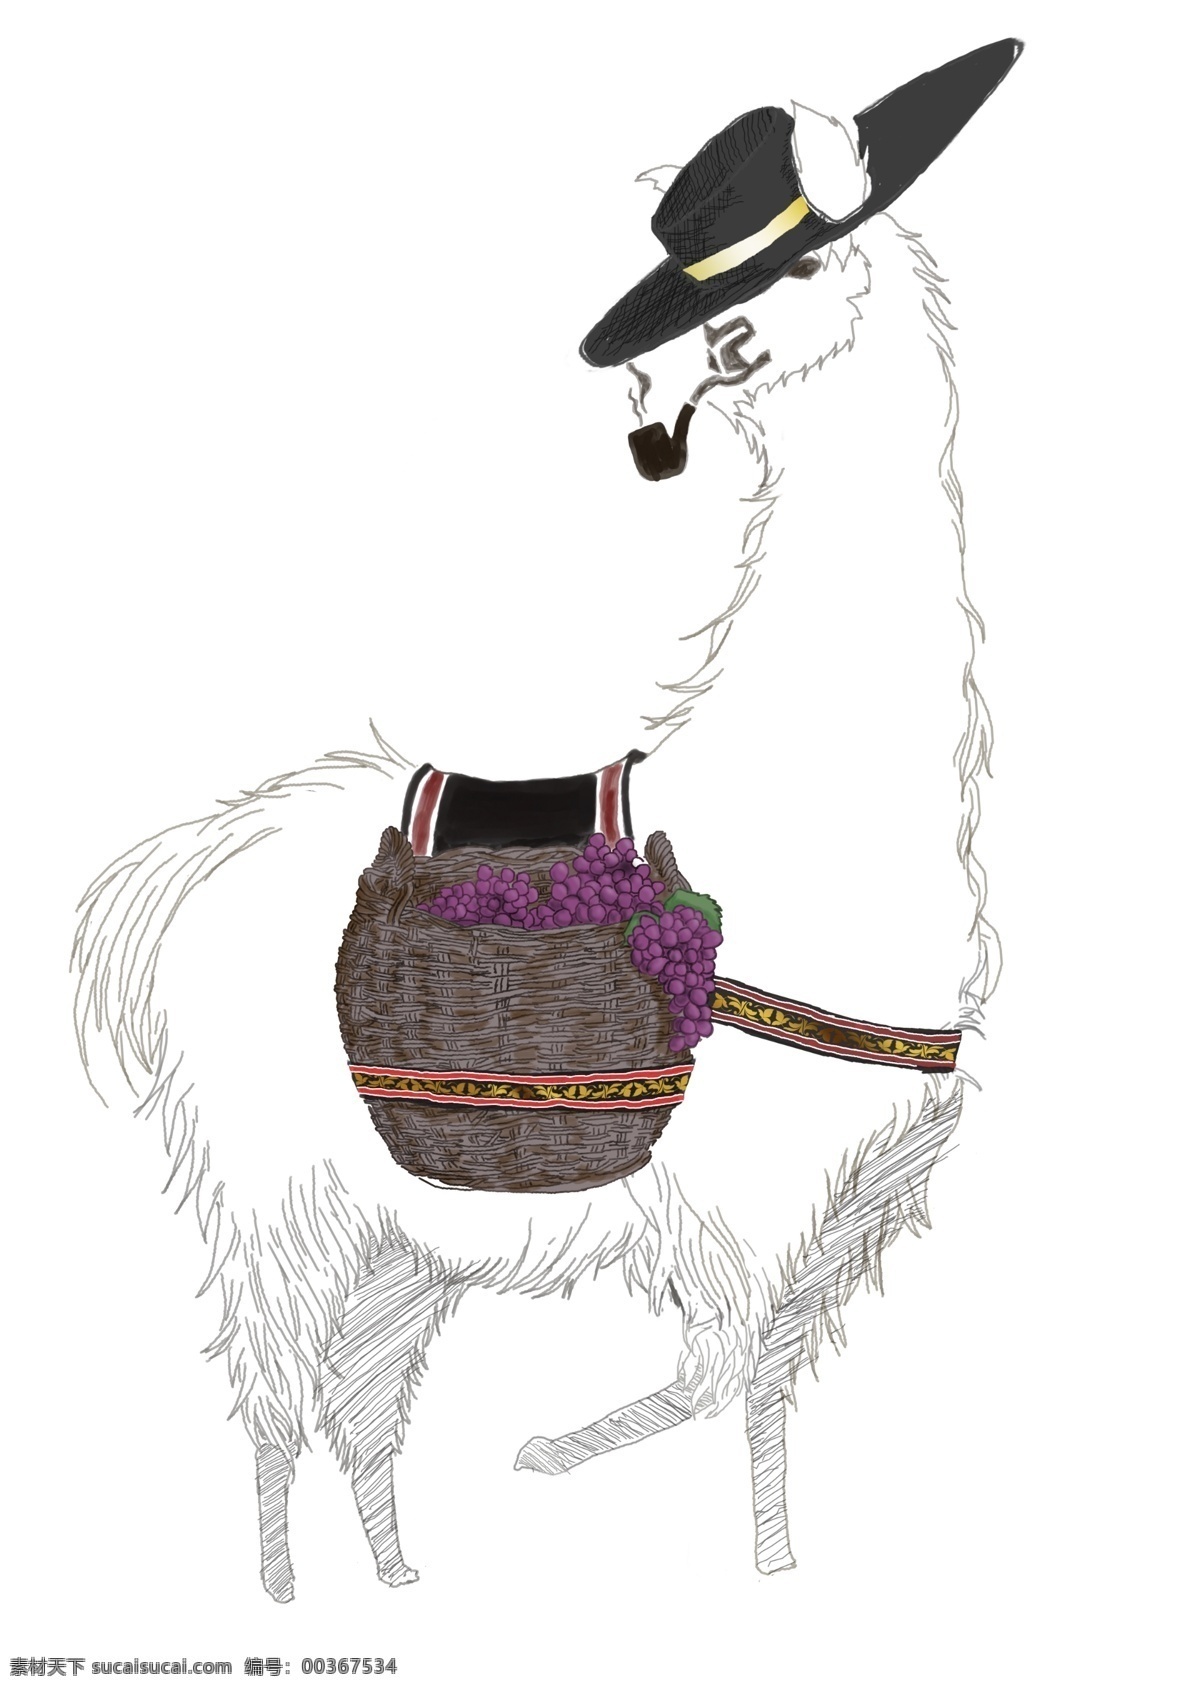 羊驼原创手稿 羊驼 llama 红酒 酒标 动物 素描 线稿 手稿 葡萄 手绘稿 分层图 智利